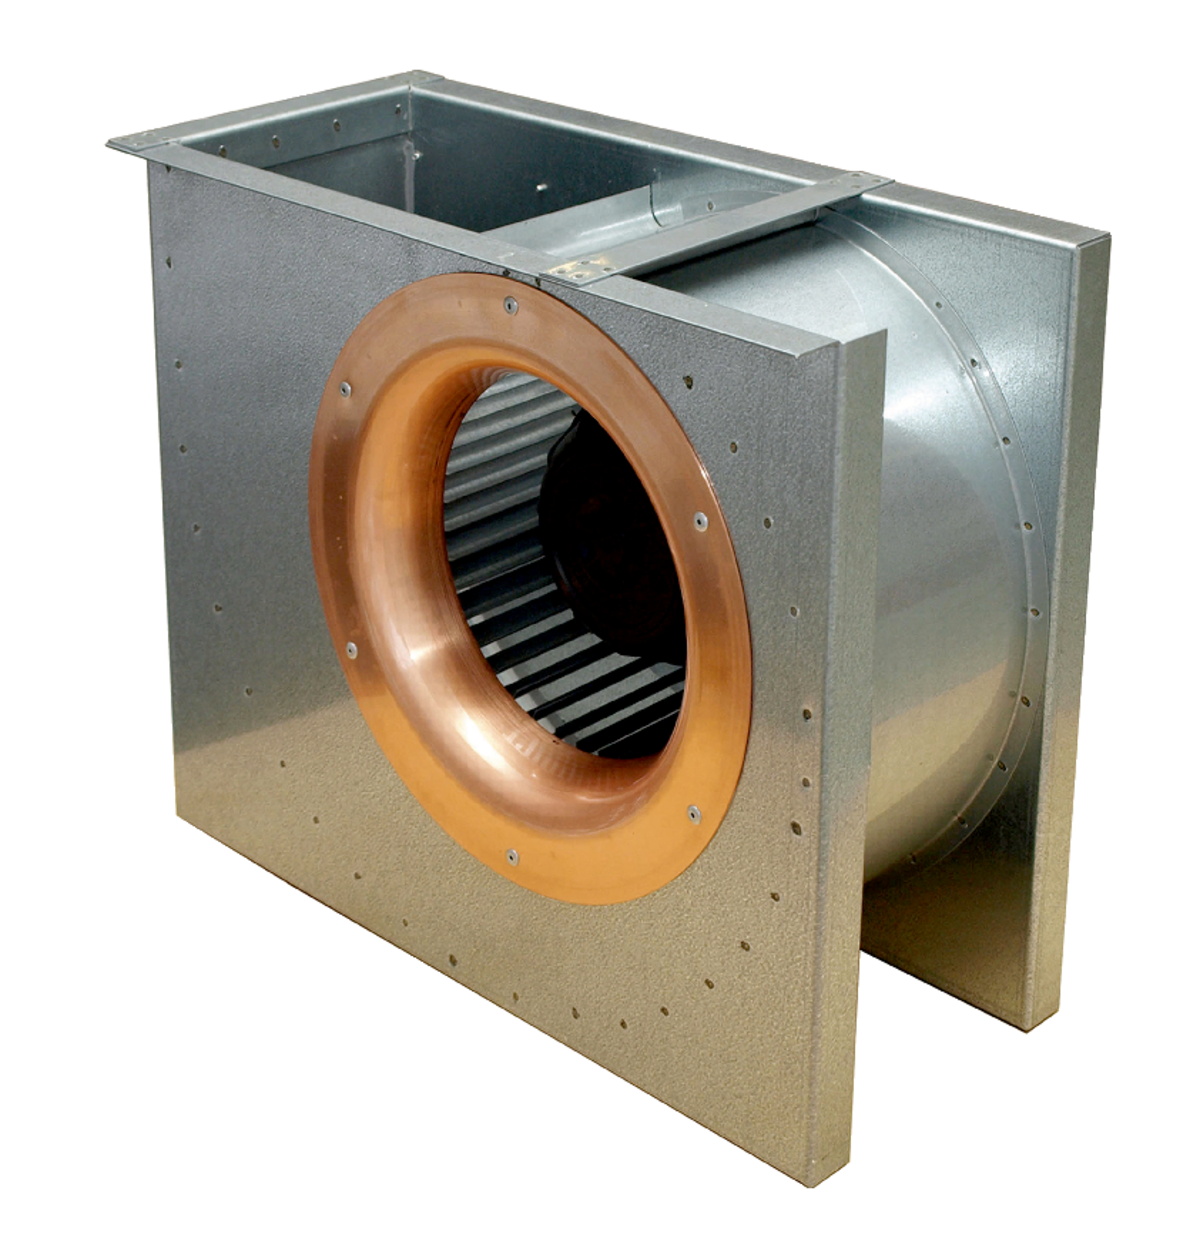 DKEX - Ventilateurs centrifuges - Ventilateurs (Ventilation et Traitement d’air) - Produits Ventilation & Traitement d’air - Systemair